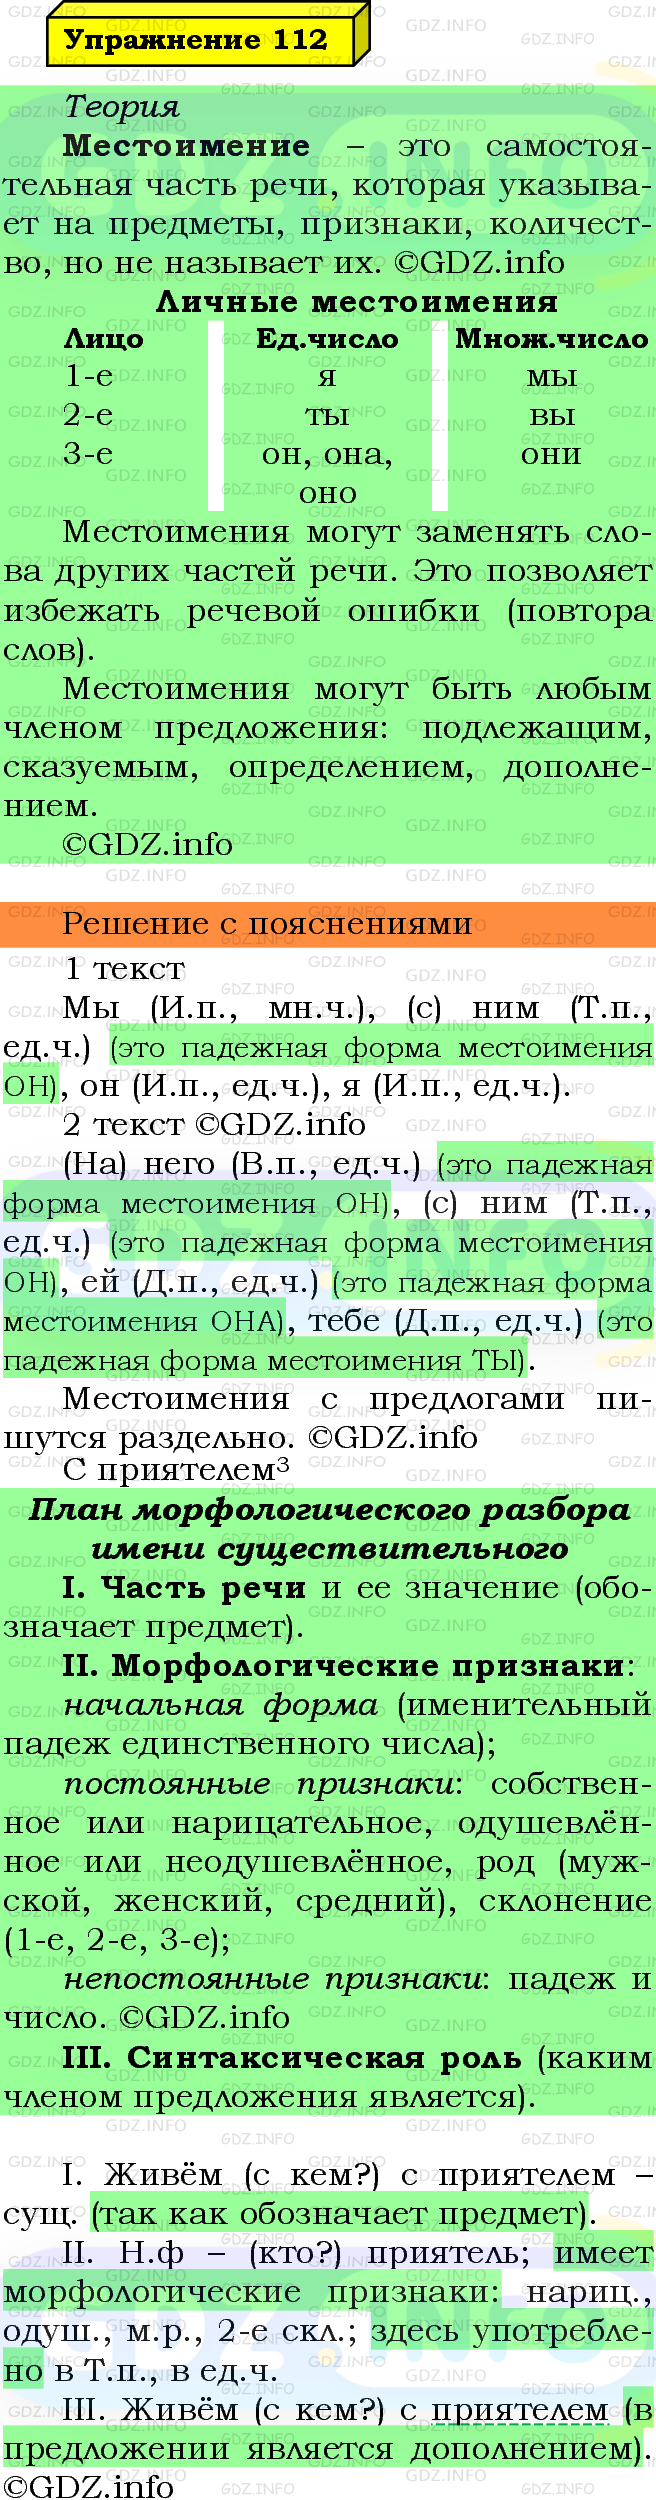 Фото решения 6: Номер №112 из ГДЗ по Русскому языку 5 класс: Ладыженская Т.А. 2019г.